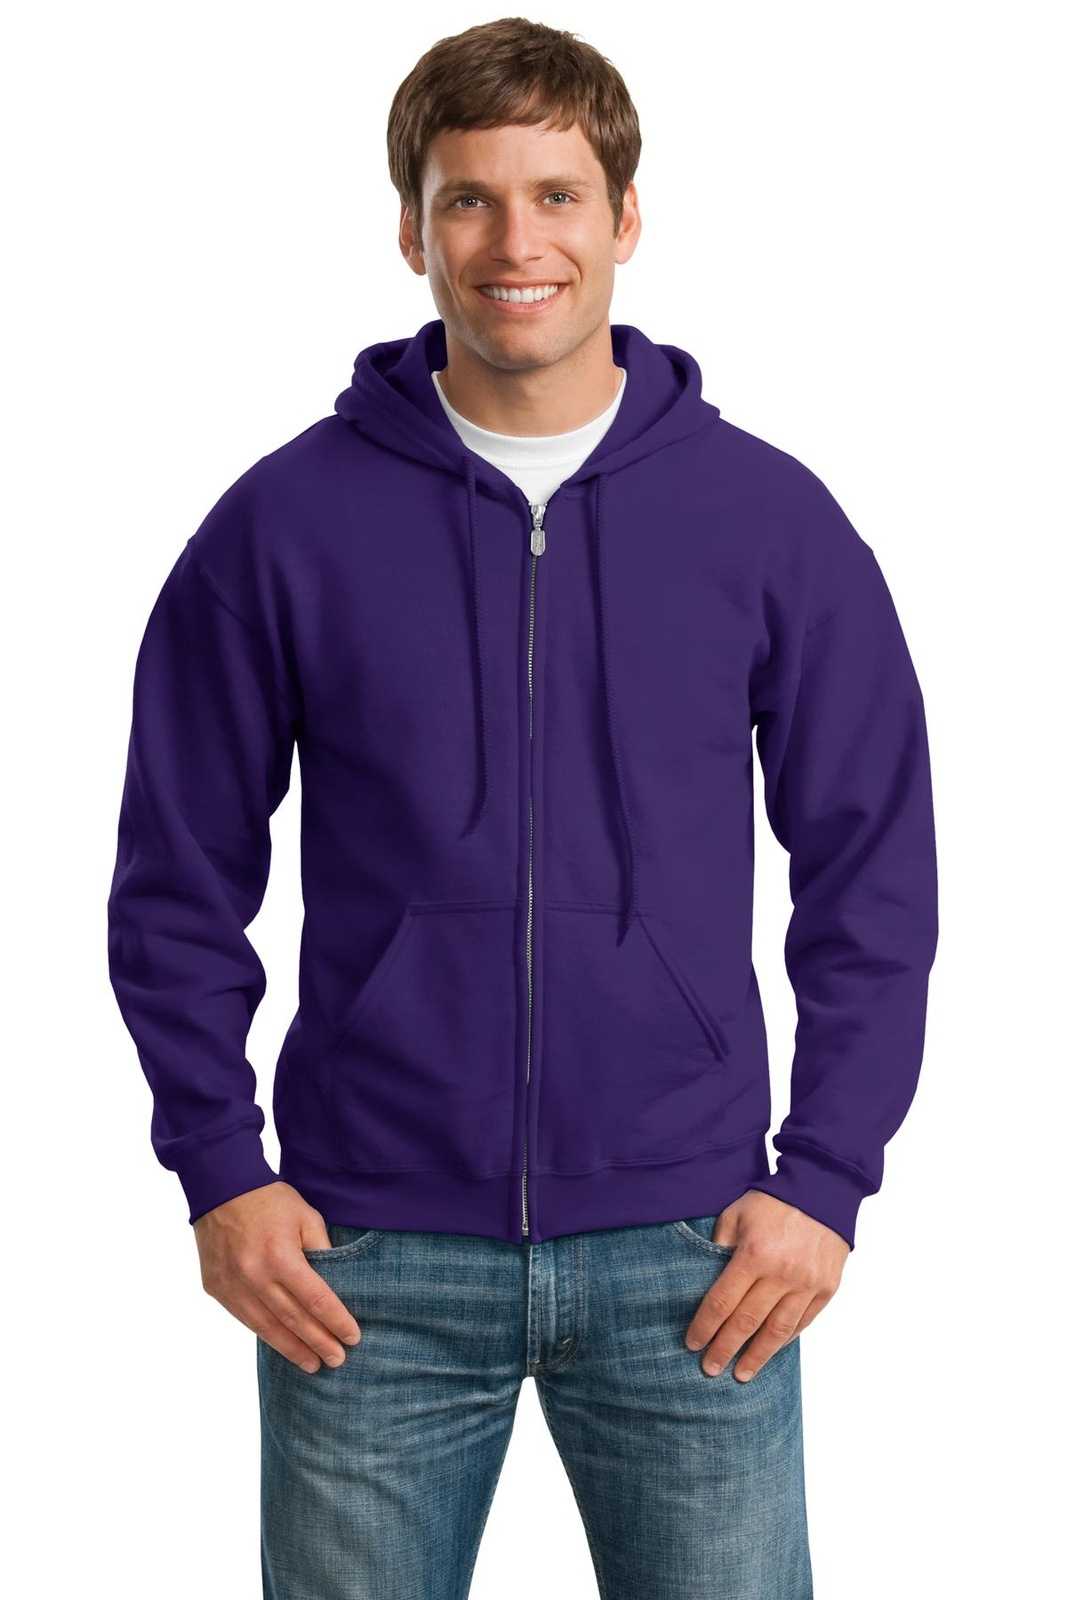 Gildan 18600 Heavy Blend Full-Zip Hooded Sweatshirt - Purple - HIT a Double